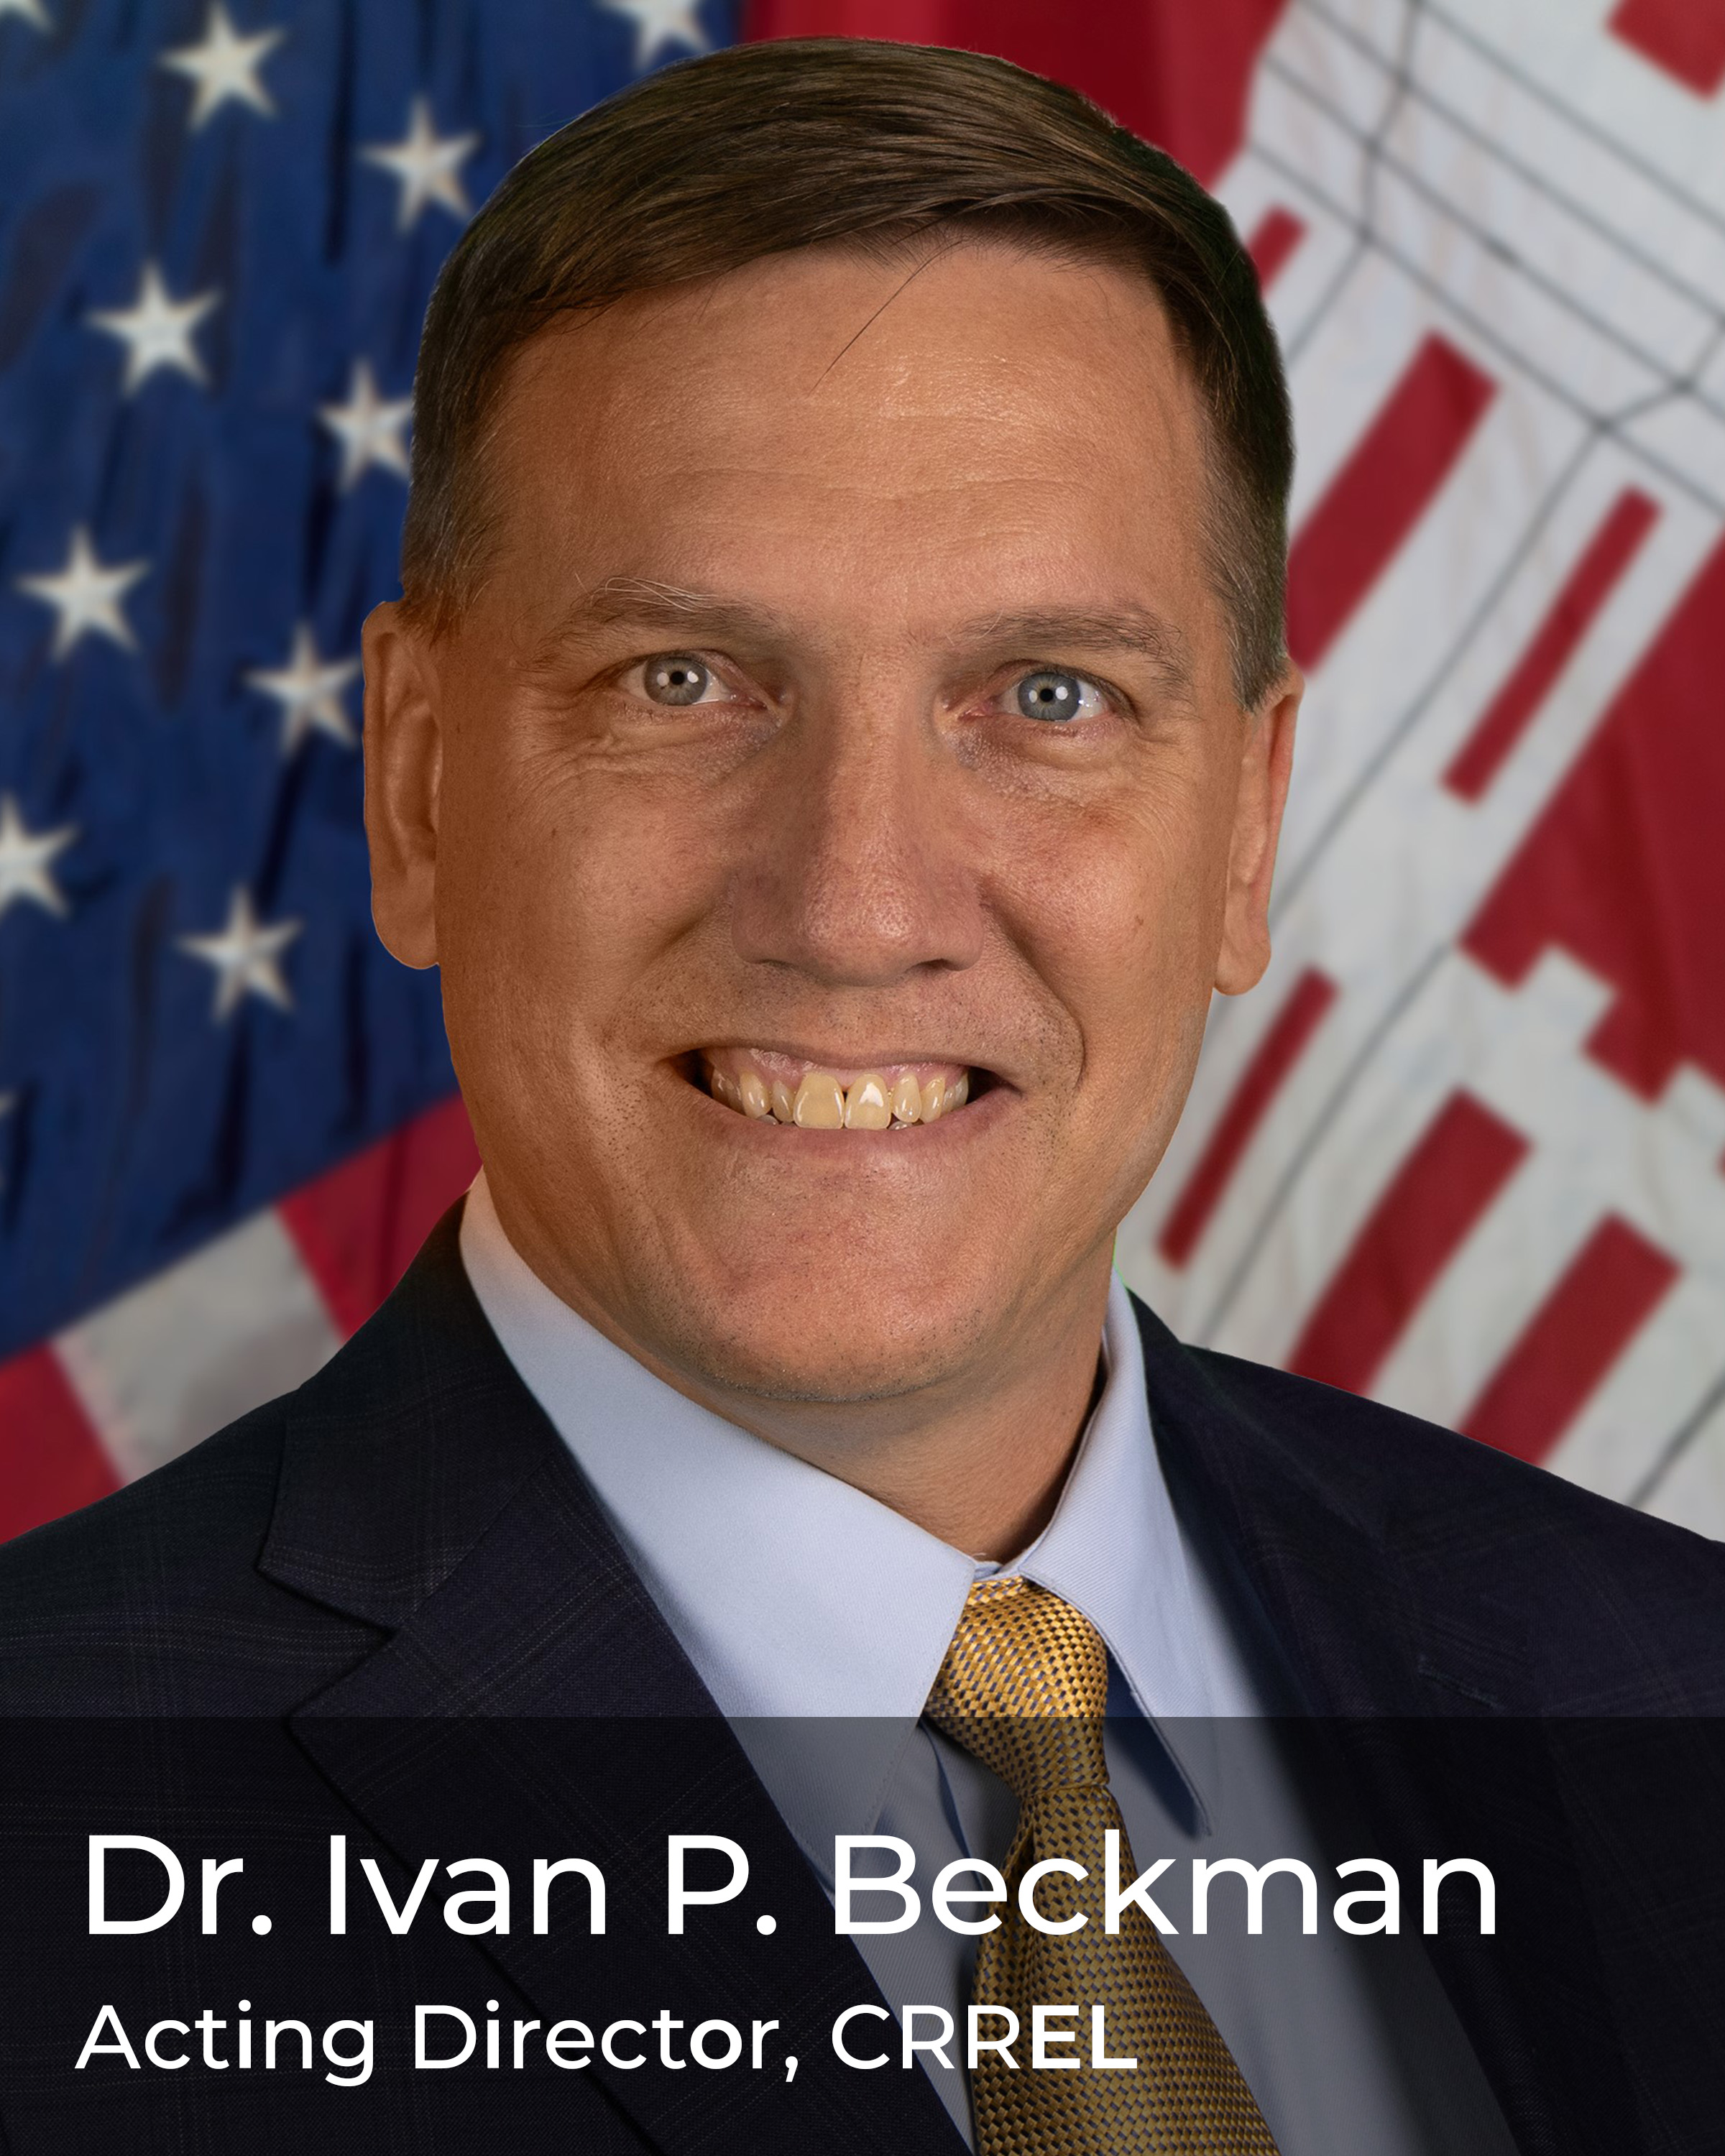 Dr. Ivan Beckman, Acting Director, CRREL